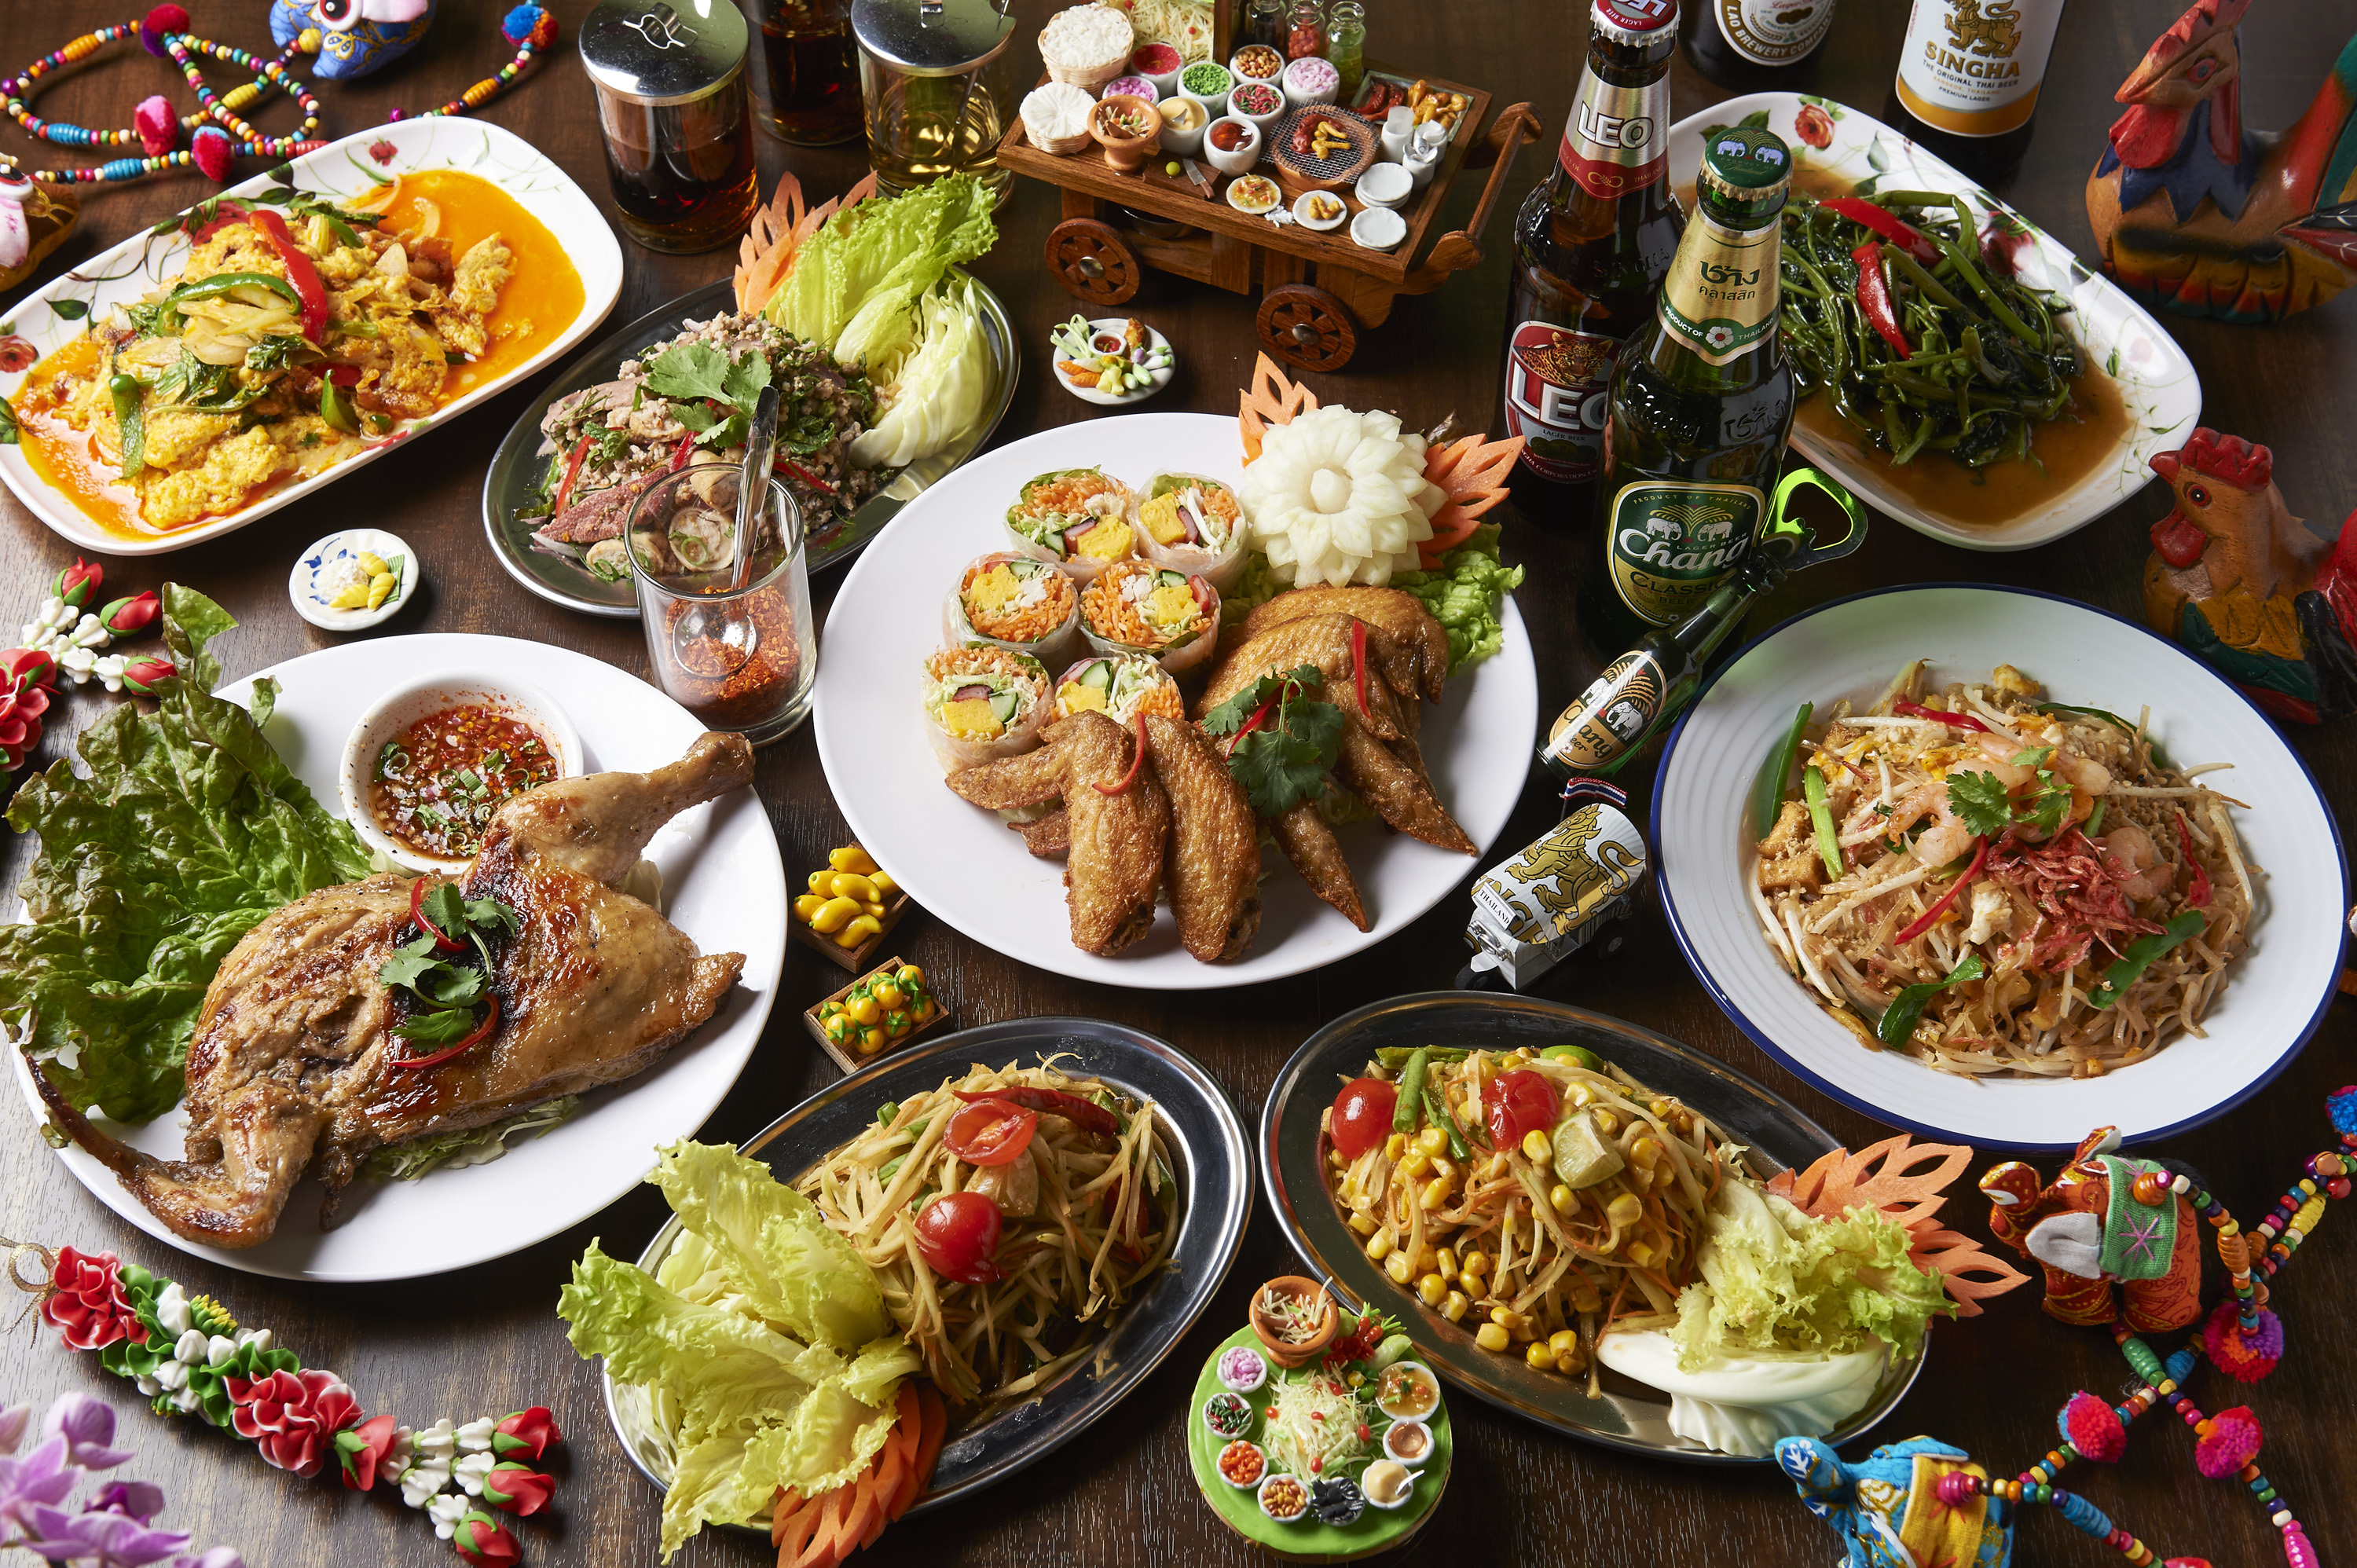 町田市内・町田駅周辺にある「タイ東北酒場 Somtum Roang Pleang （ソムタムローンプレーン）」さんのクチコミレポート。タイ人シェフによる本場のイサーン料理を提供している人気のタイ料理屋